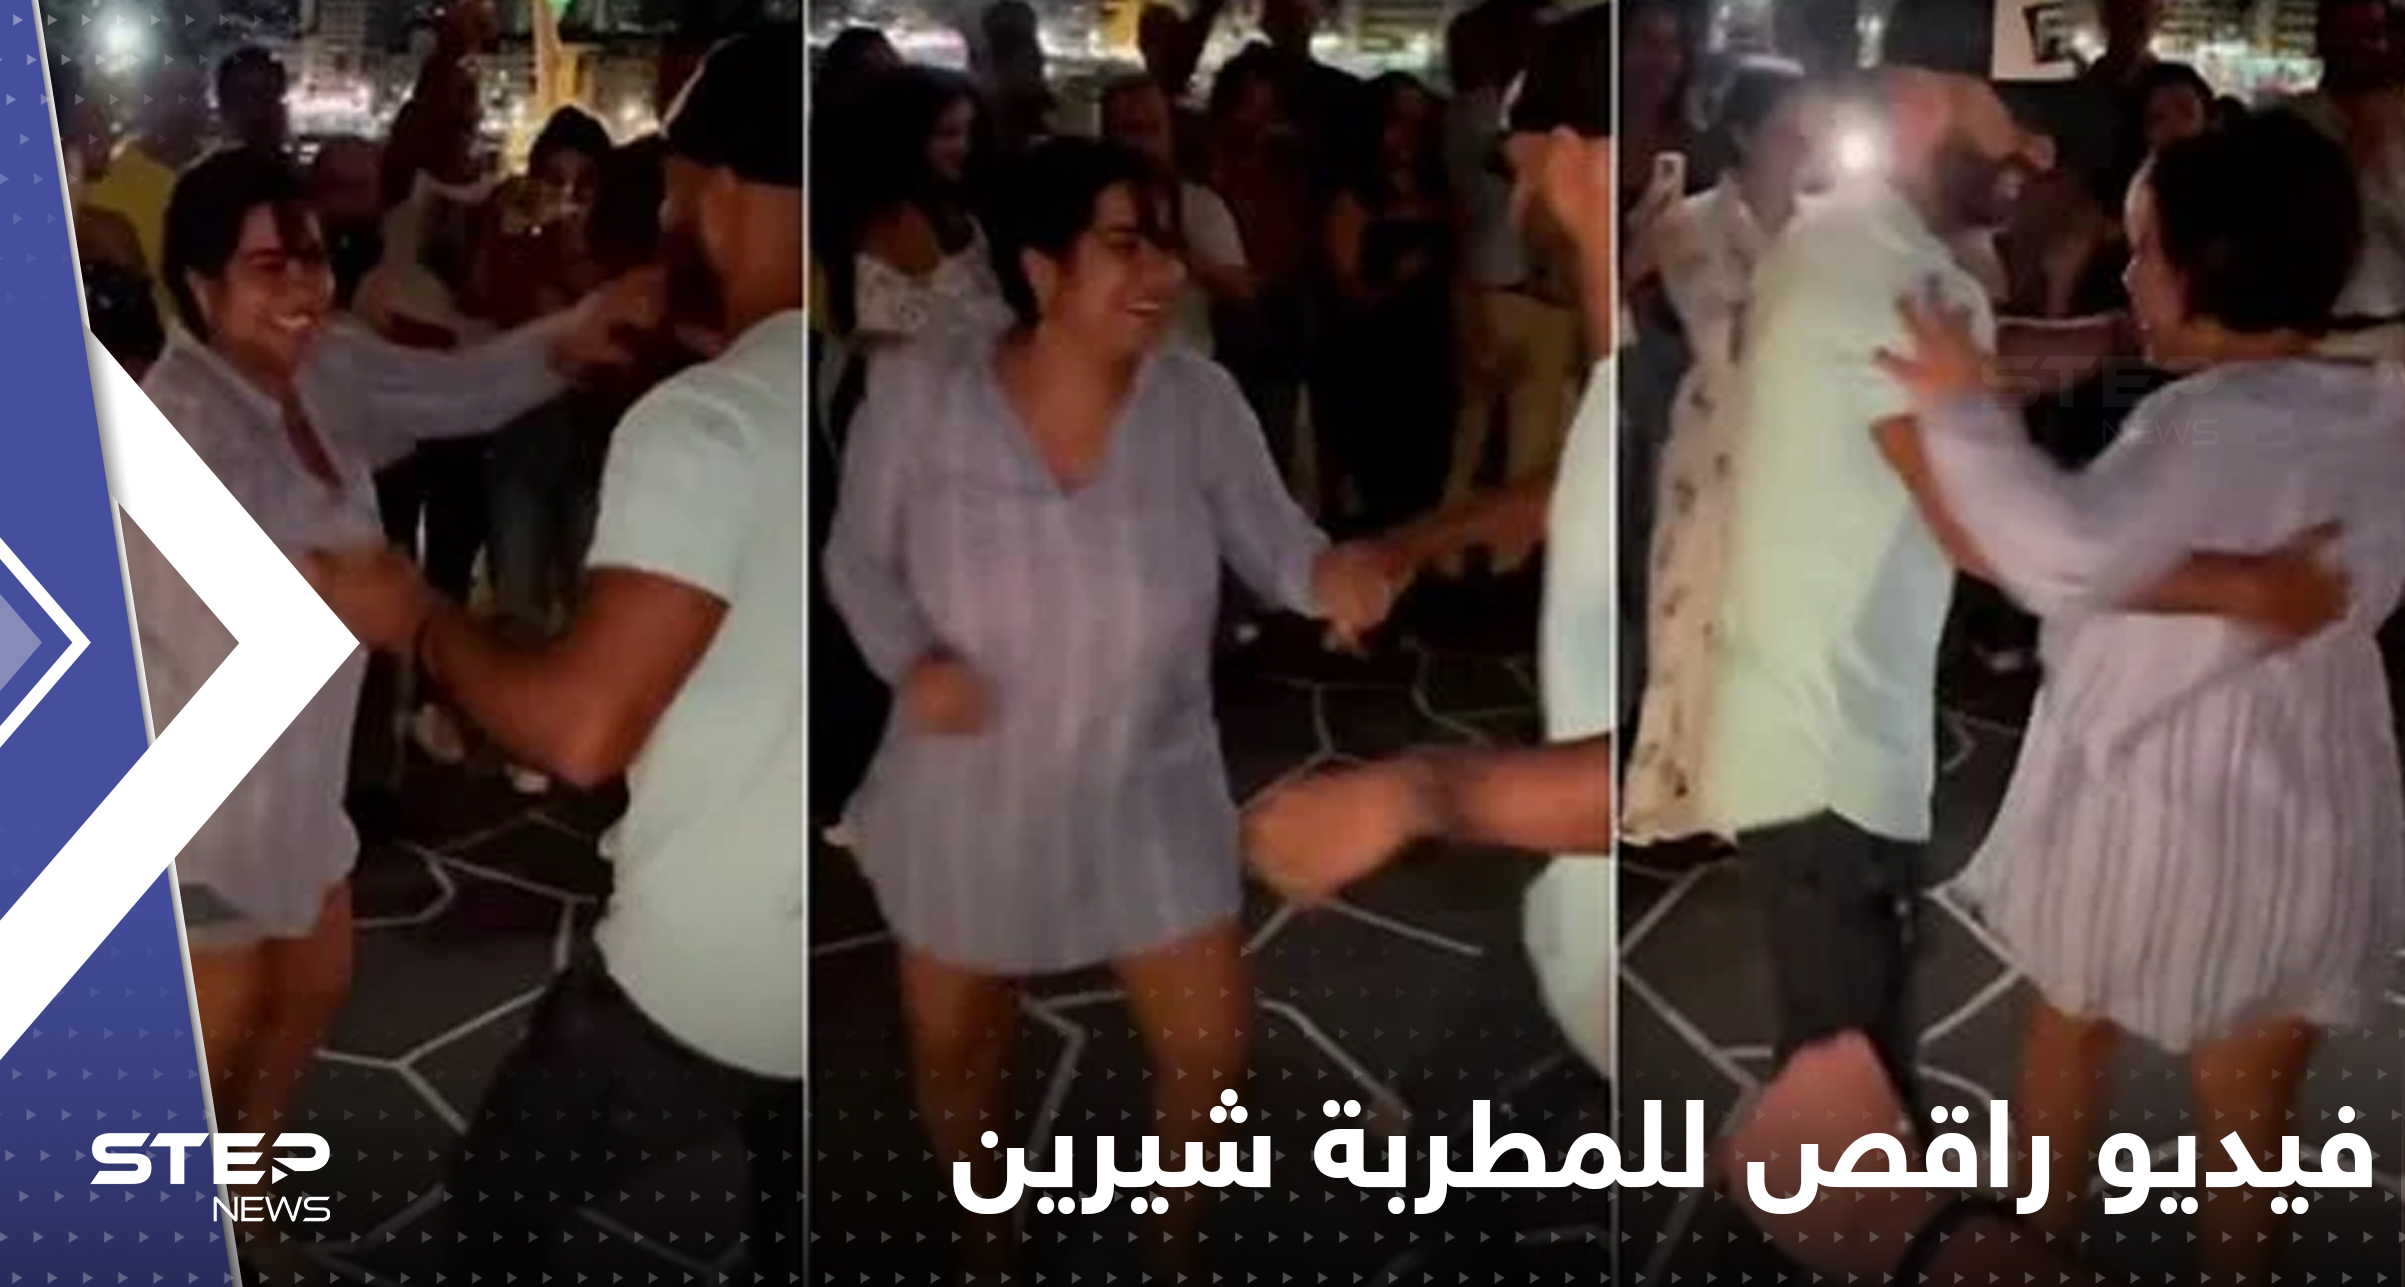 شاهد|| فيديو راقص للمطربة شيرين مع شاب يثير ضجة في مصر